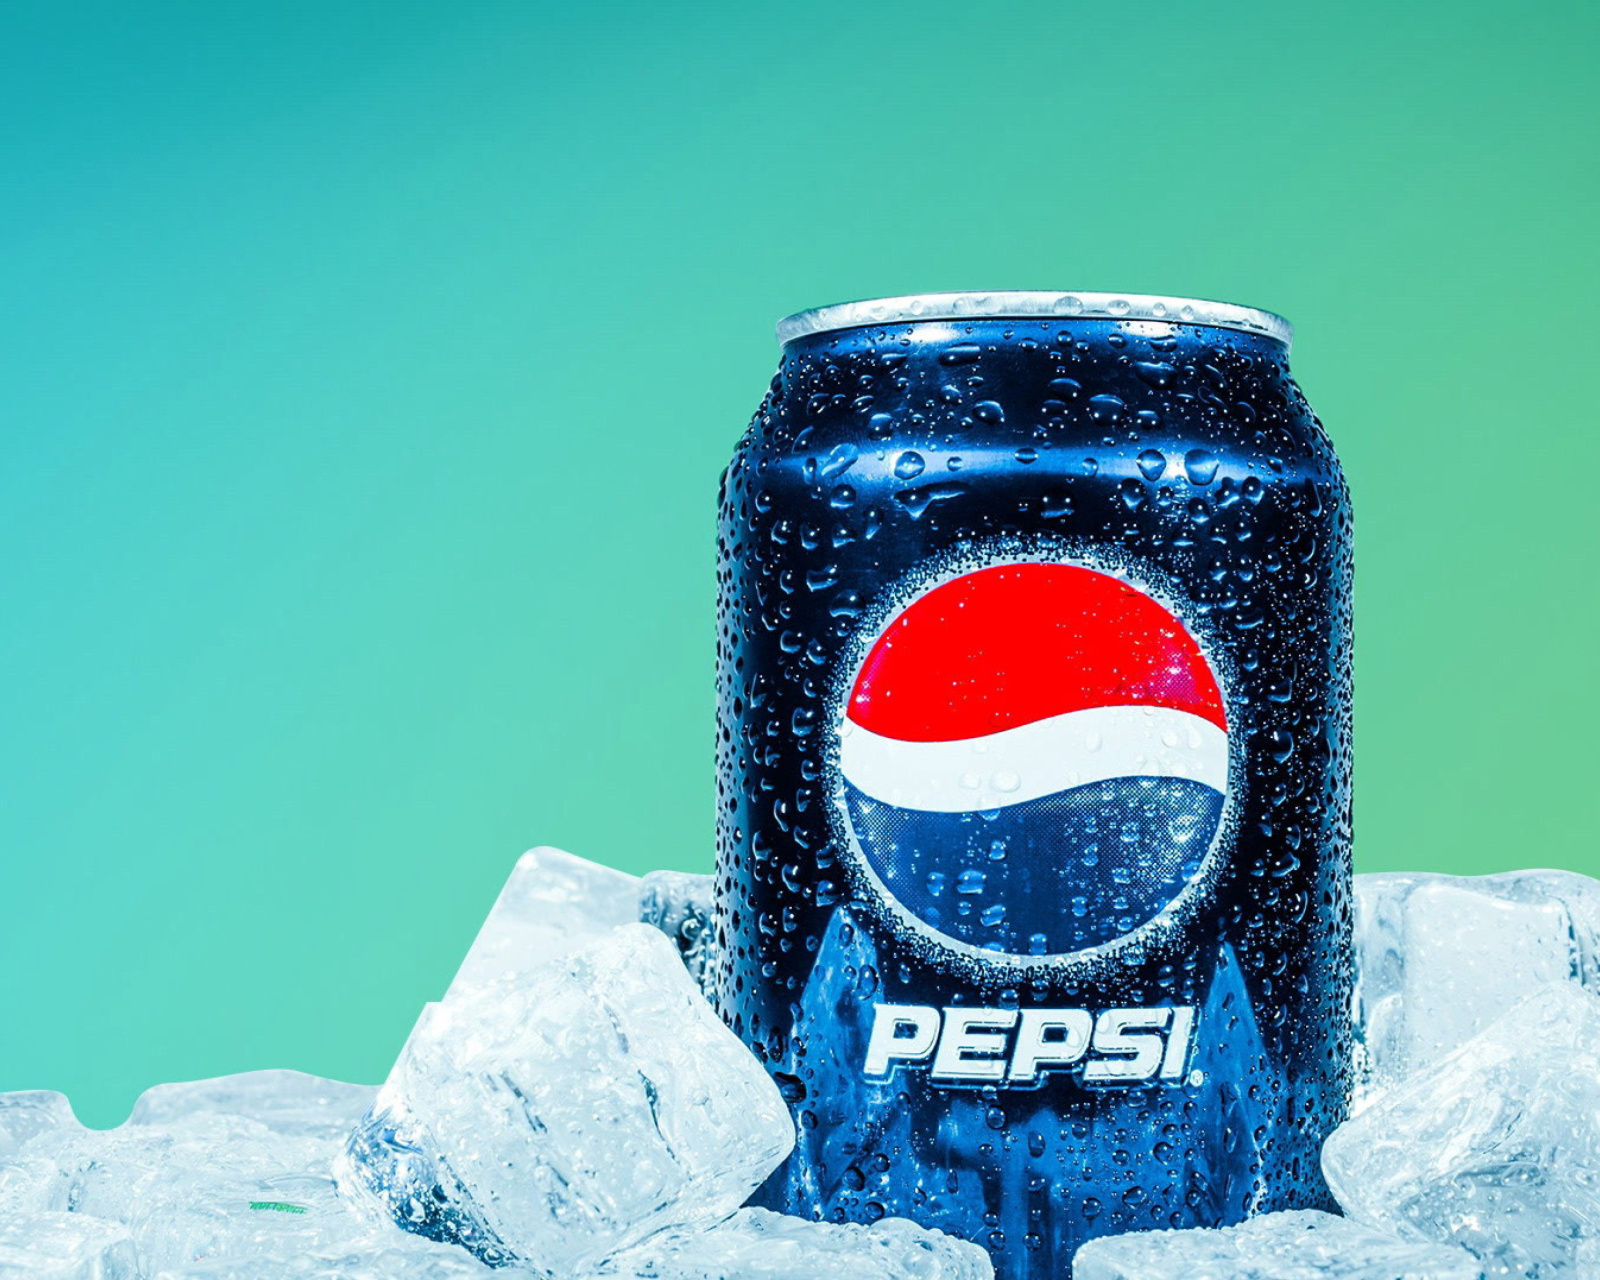 Обои Pepsi in Ice 1600x1280